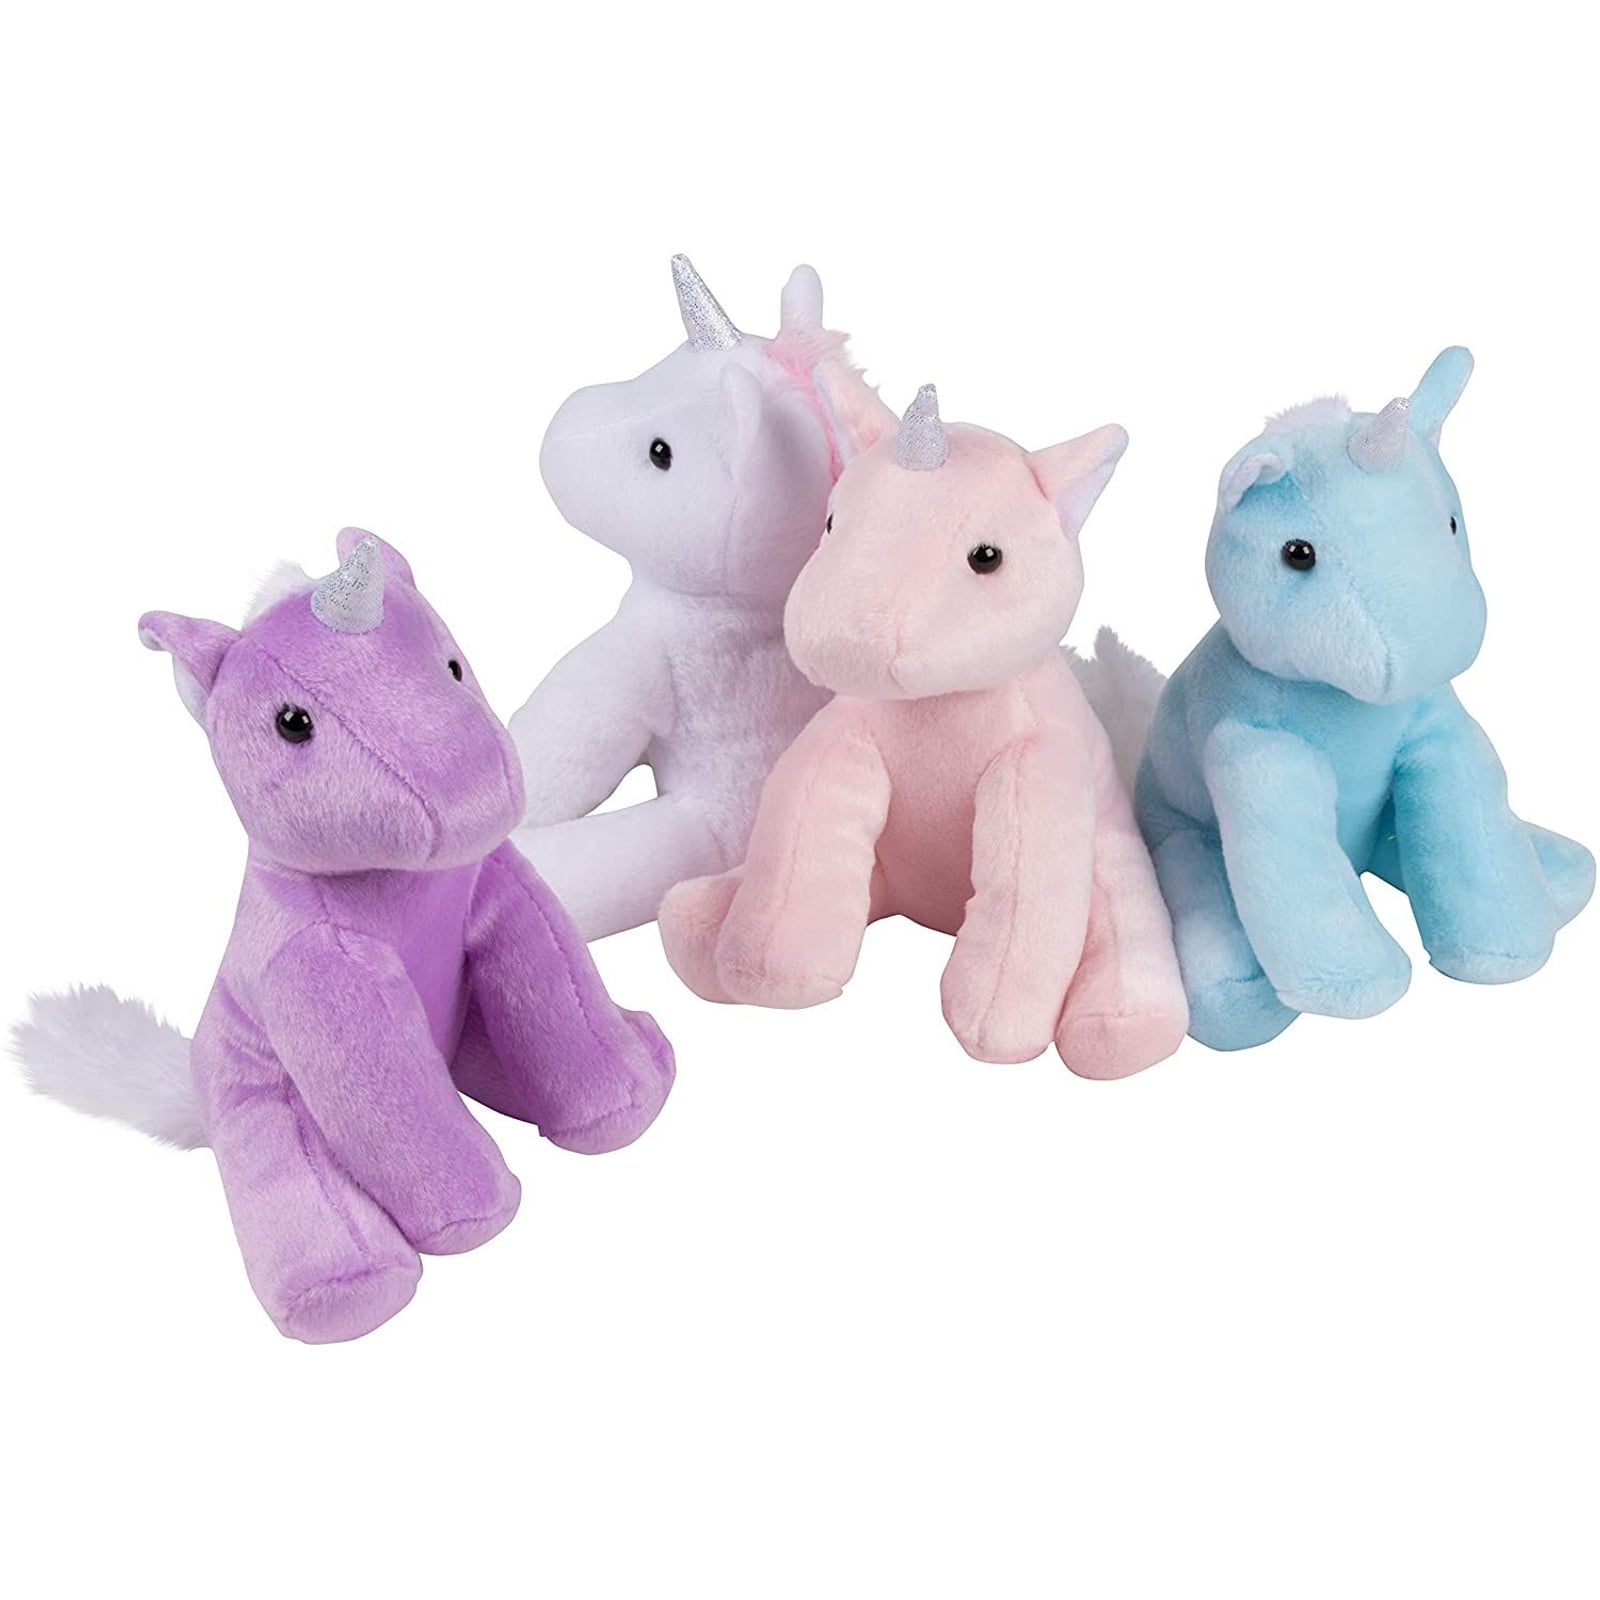 Unicorn Stuffed Animal Floppy Plush 12" Pink Purple or White w/ Sparkles Hug Fun 